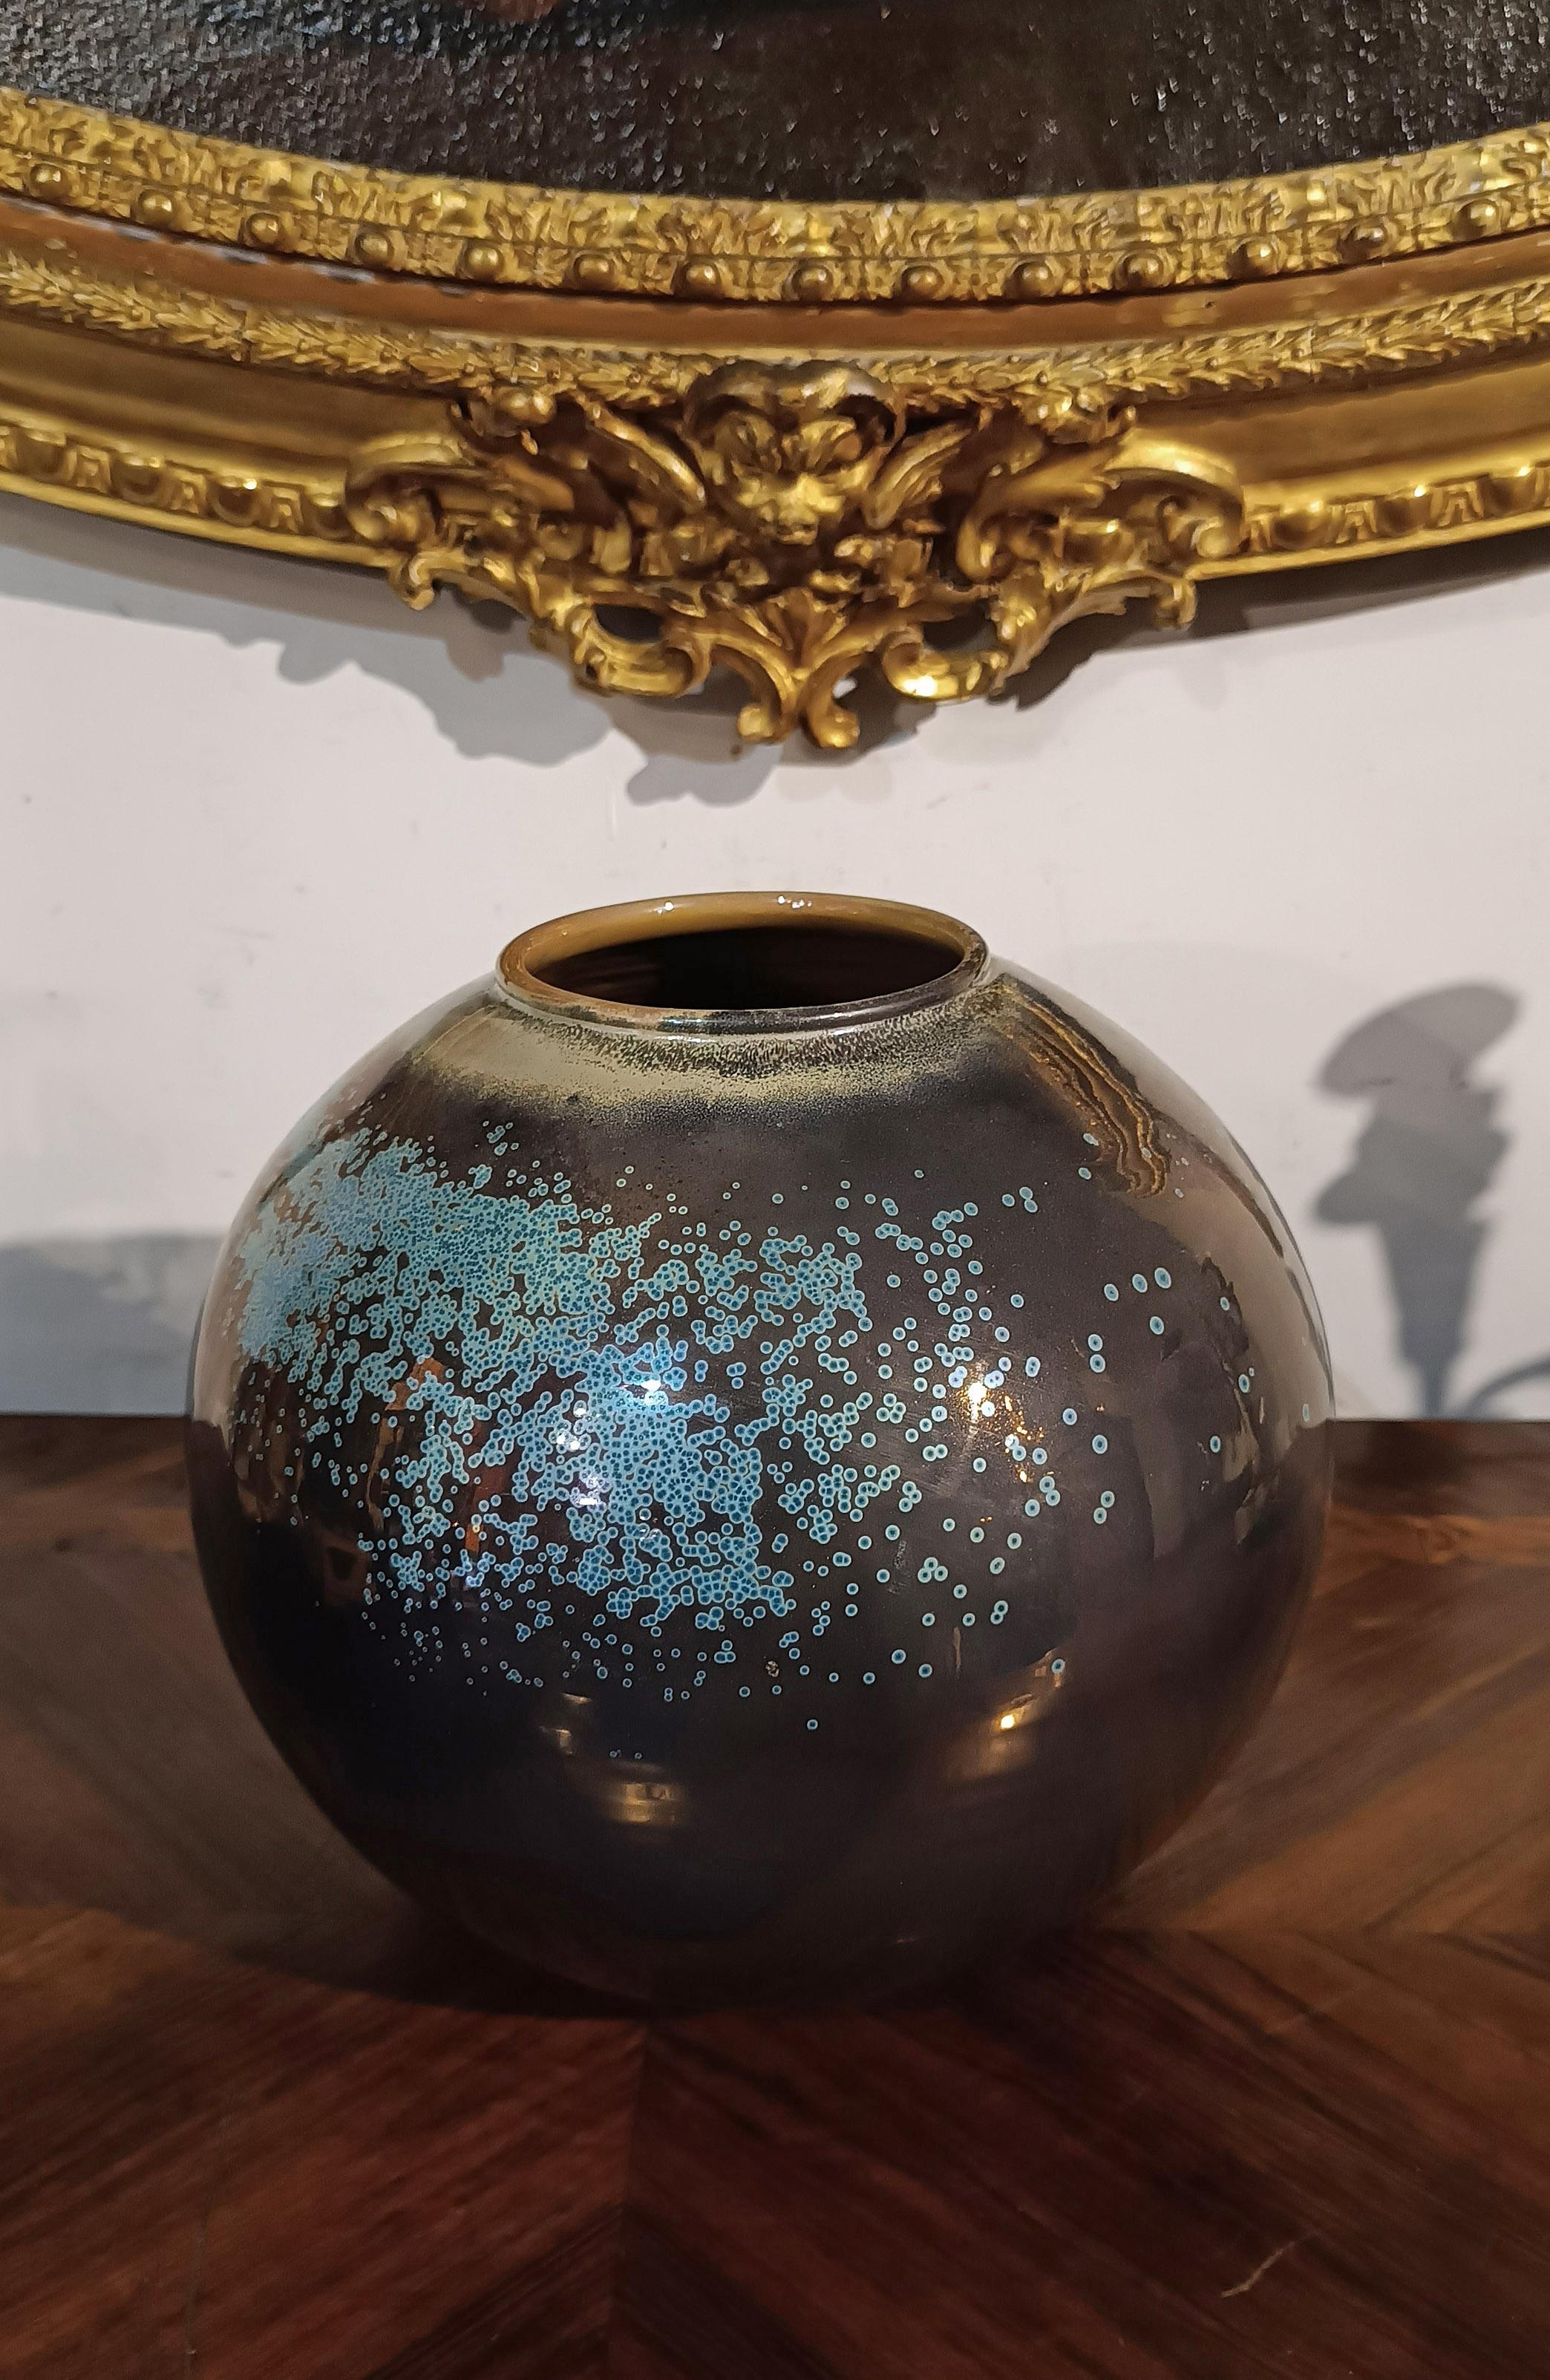 Schöne runde Vase aus glasierter Keramik, mit Bronzereflexen und Dekorationen mit meergrünen Farbtupfern. Die Vase hat außerdem einen abgerundeten, leicht nach außen gewölbten Rand und einen ringförmigen Boden. Die 